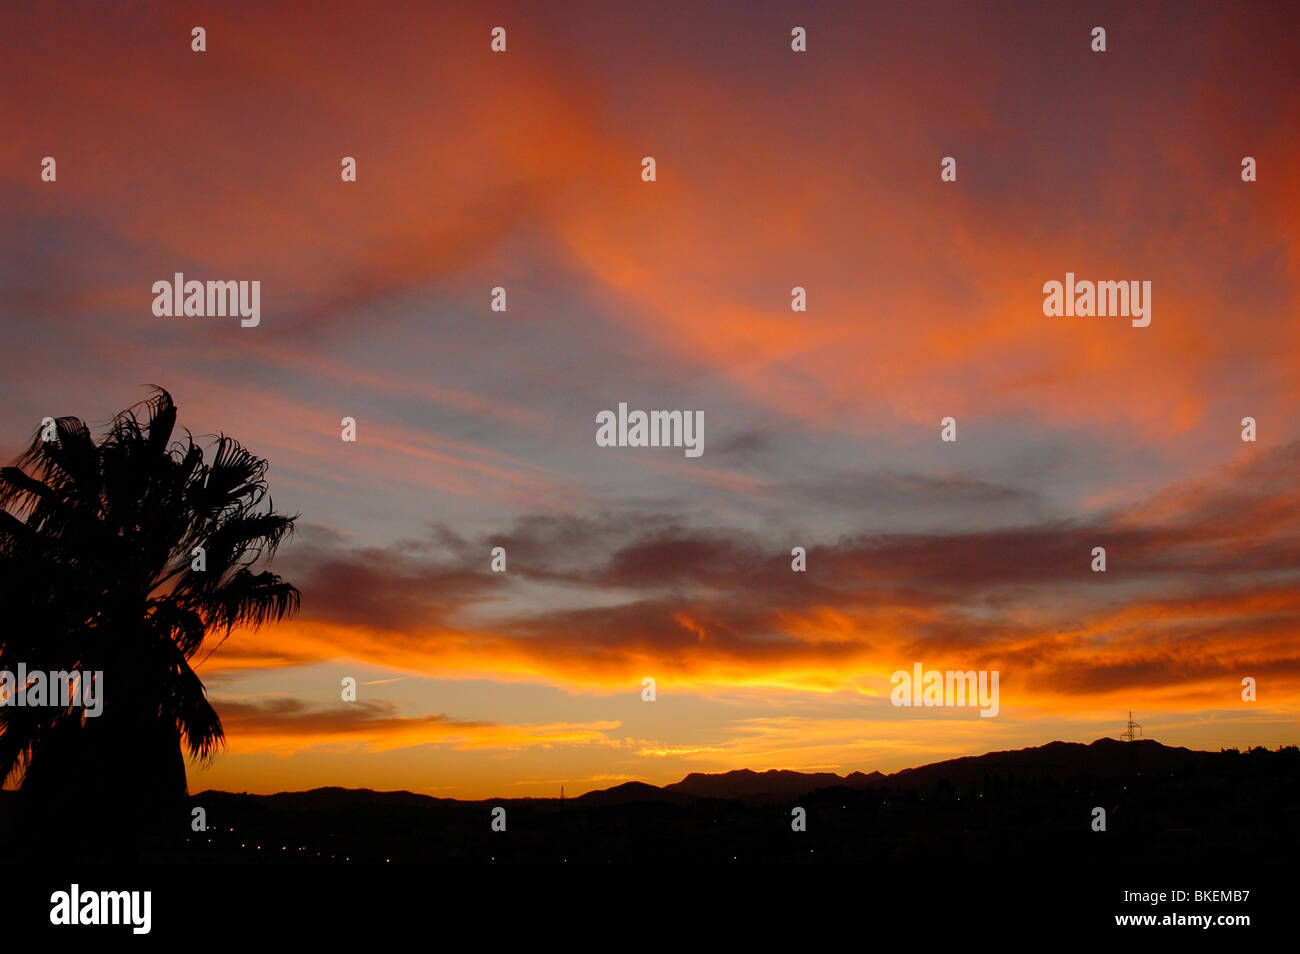 Sunset image Stock Photo